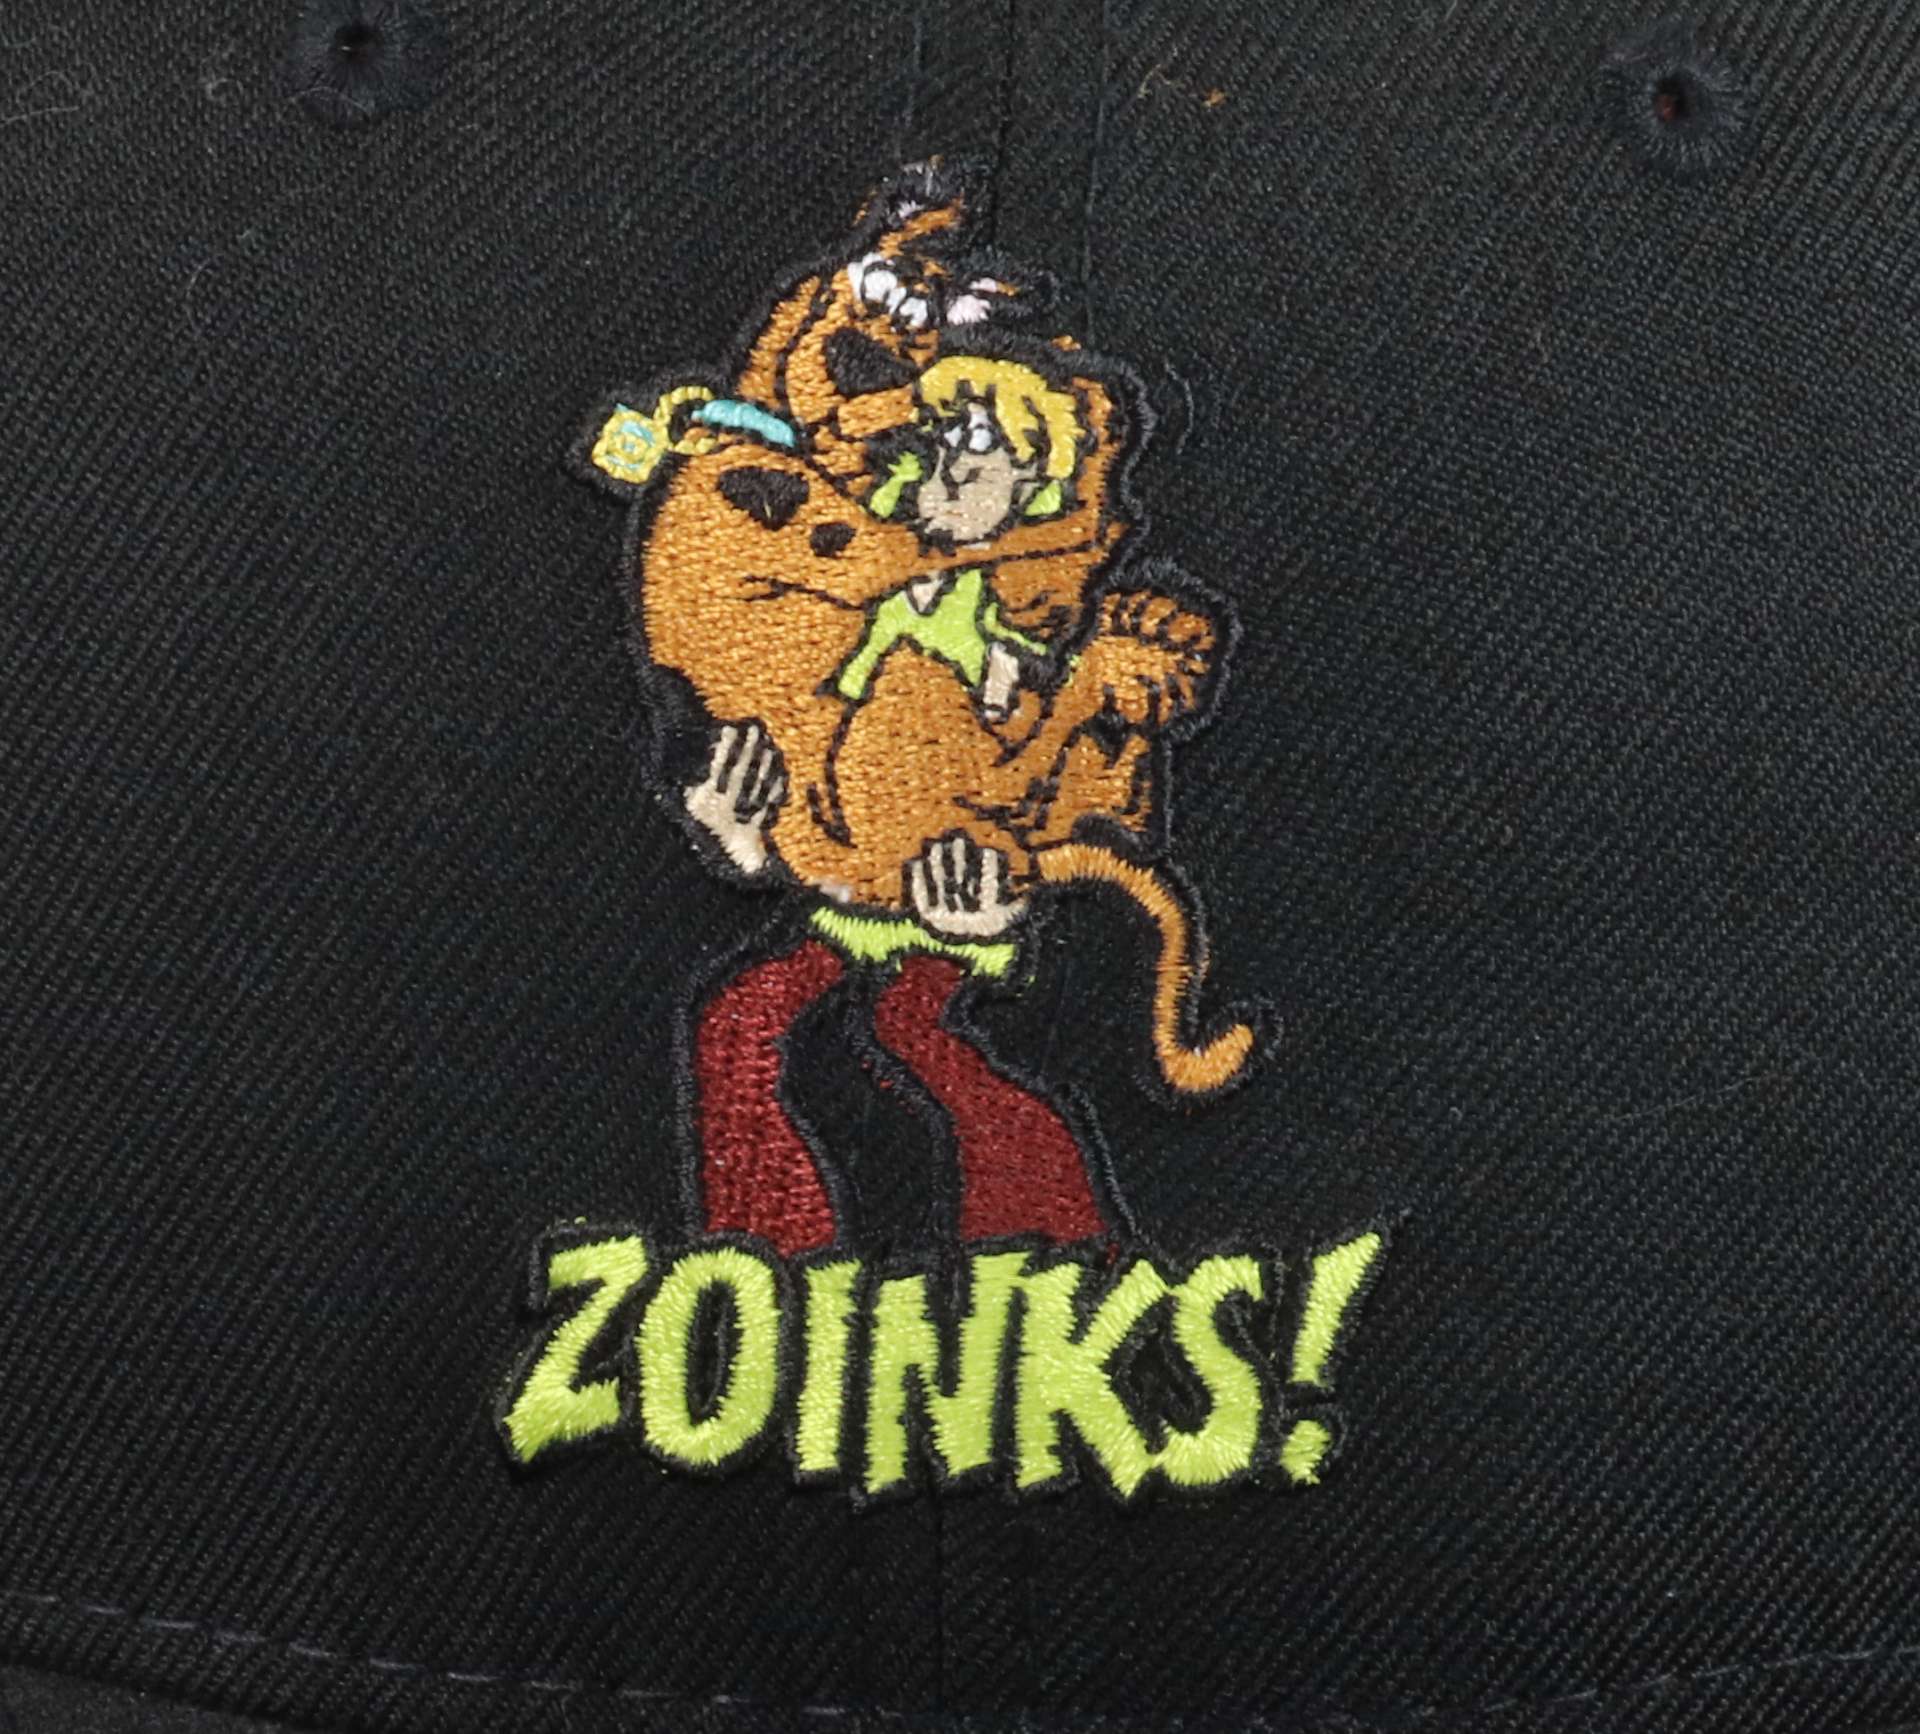 Scooby-Doo Zoinks Black 9Fifty Snapback Cap New Era